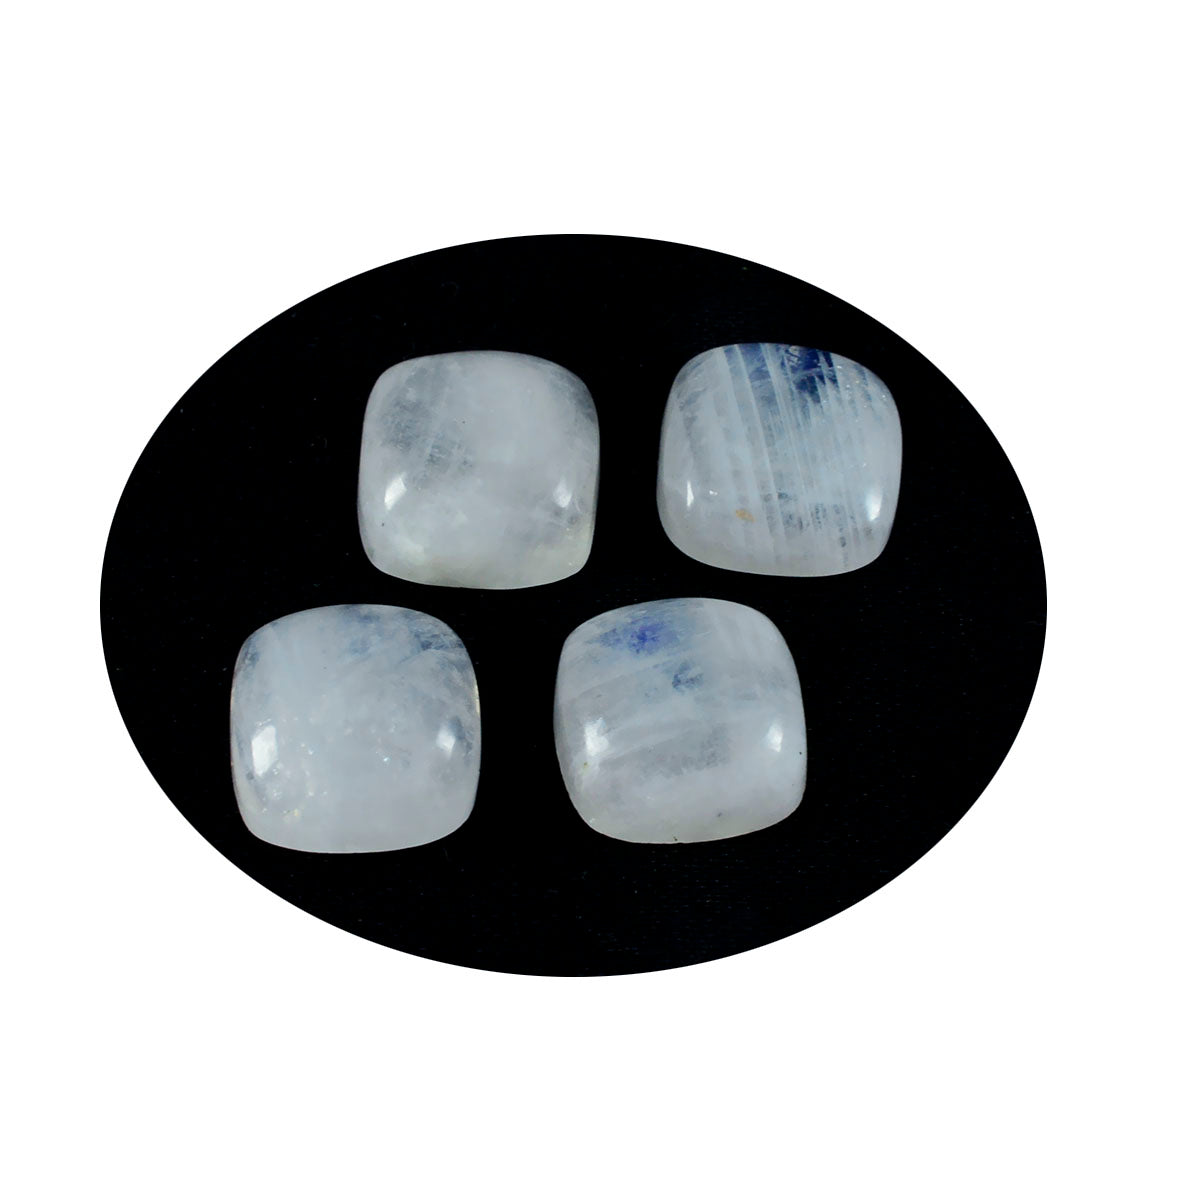 riyogems 1 шт. белый радужный лунный камень кабошон 7x7 мм в форме подушки, камень хорошего качества